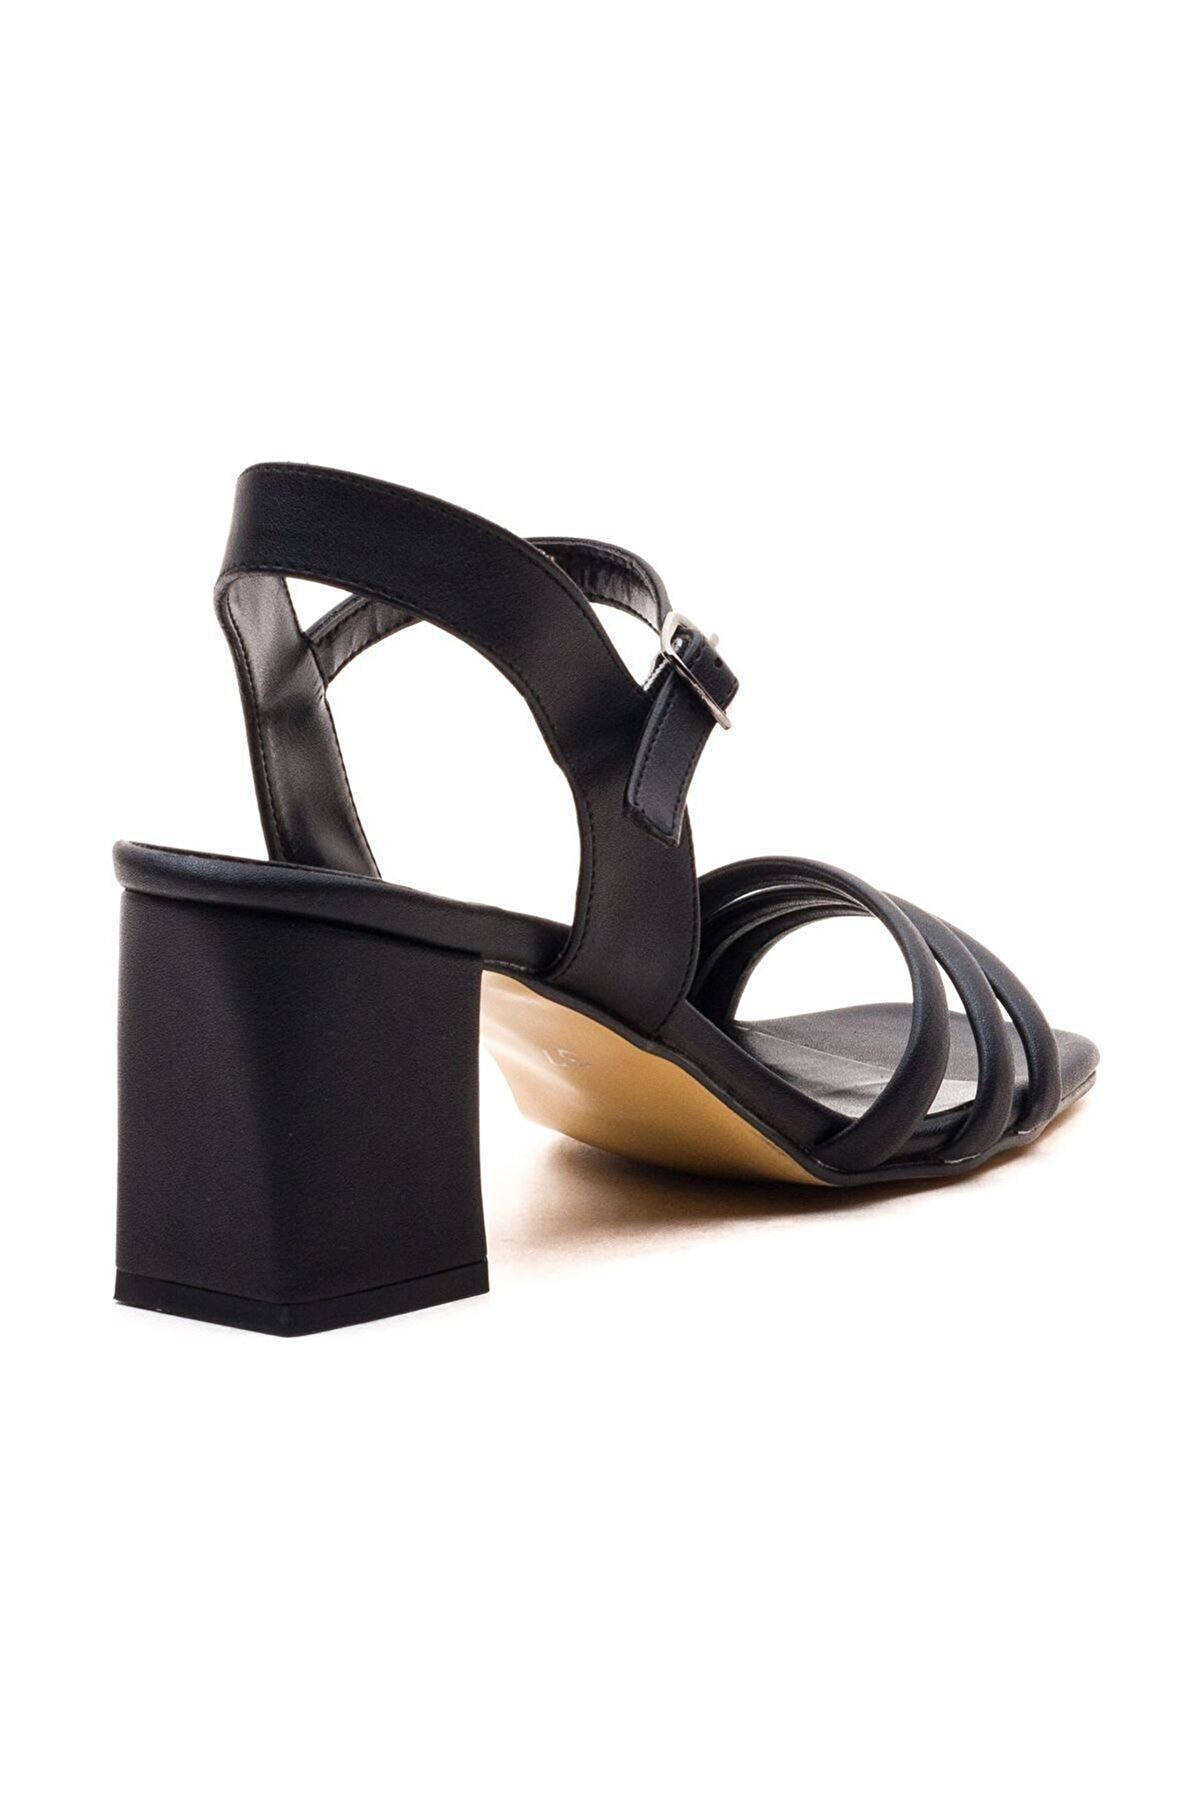 Kadın Bantlı Topuklu Ayakkabı Sandalet Luis Gate Shoes-Siyah